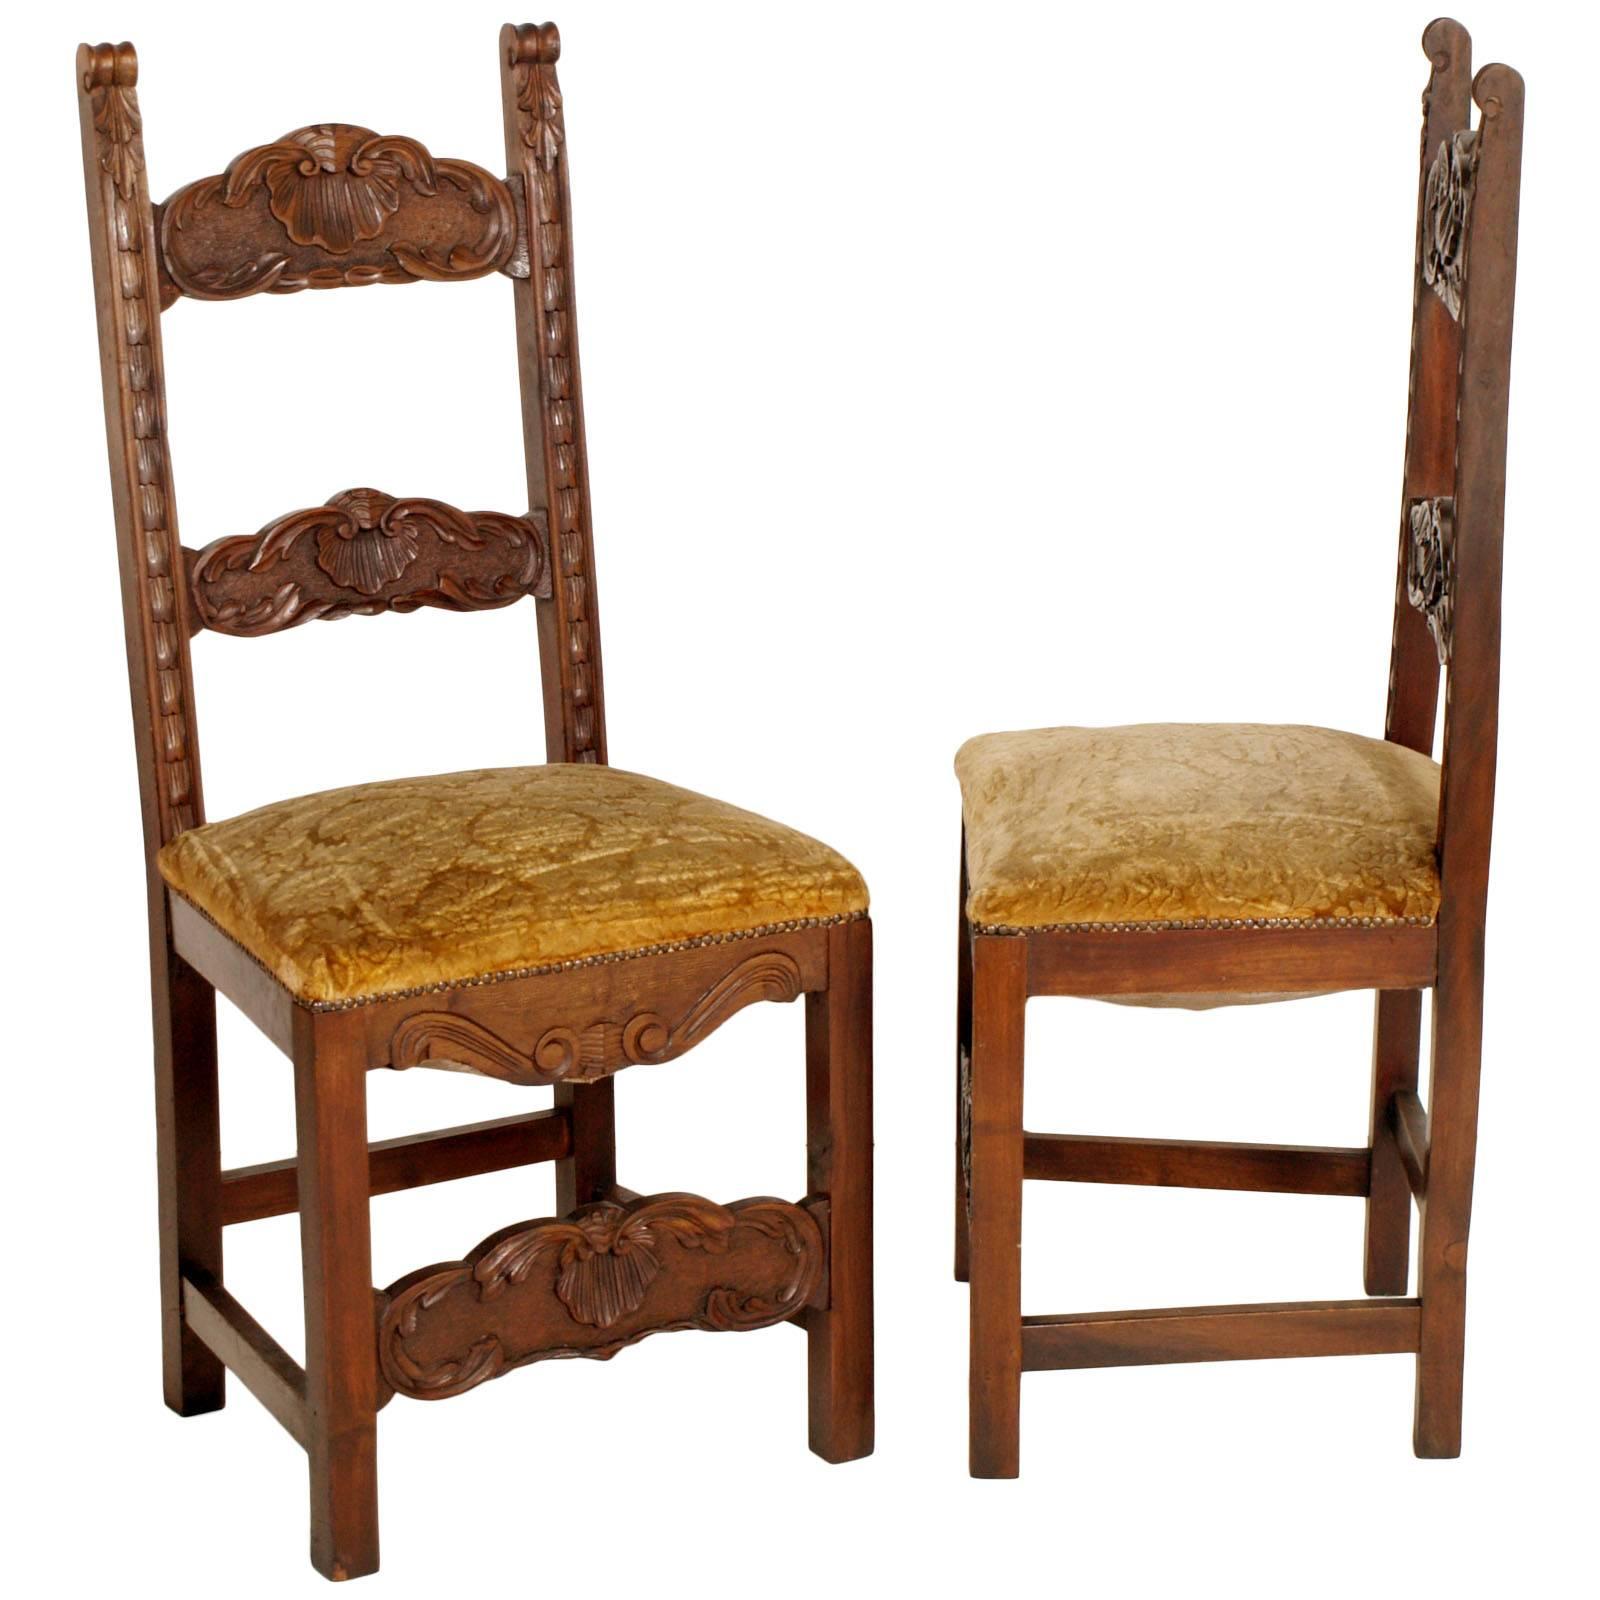 Fin du 19e siècle, ensemble de six chaises Renaissance en noyer sculpté à la main, assise à ressorts garnie de velours ocre. Les chaises sont encore utilisables. Leur restauration, avec une nouvelle sellerie, coûte 900 US $.

Mesures en cm : H